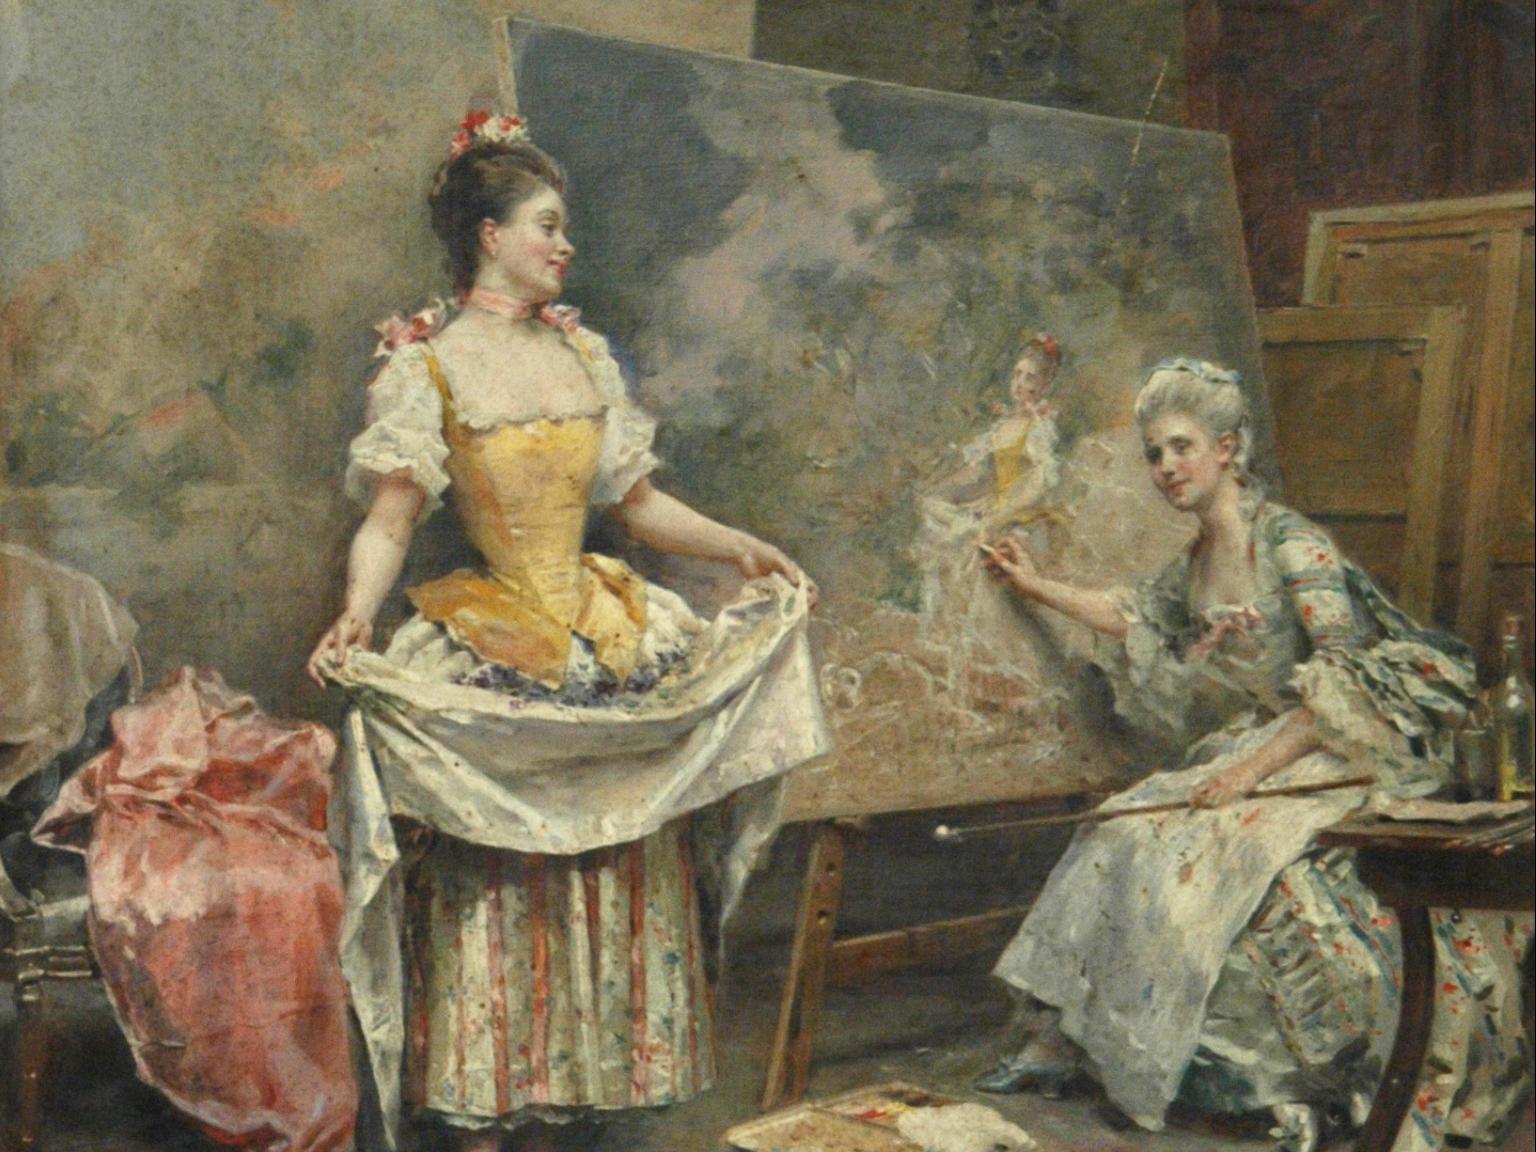 Pintura que muestra a dos mujeres con vestidos antiguos, una está retratando a la otra